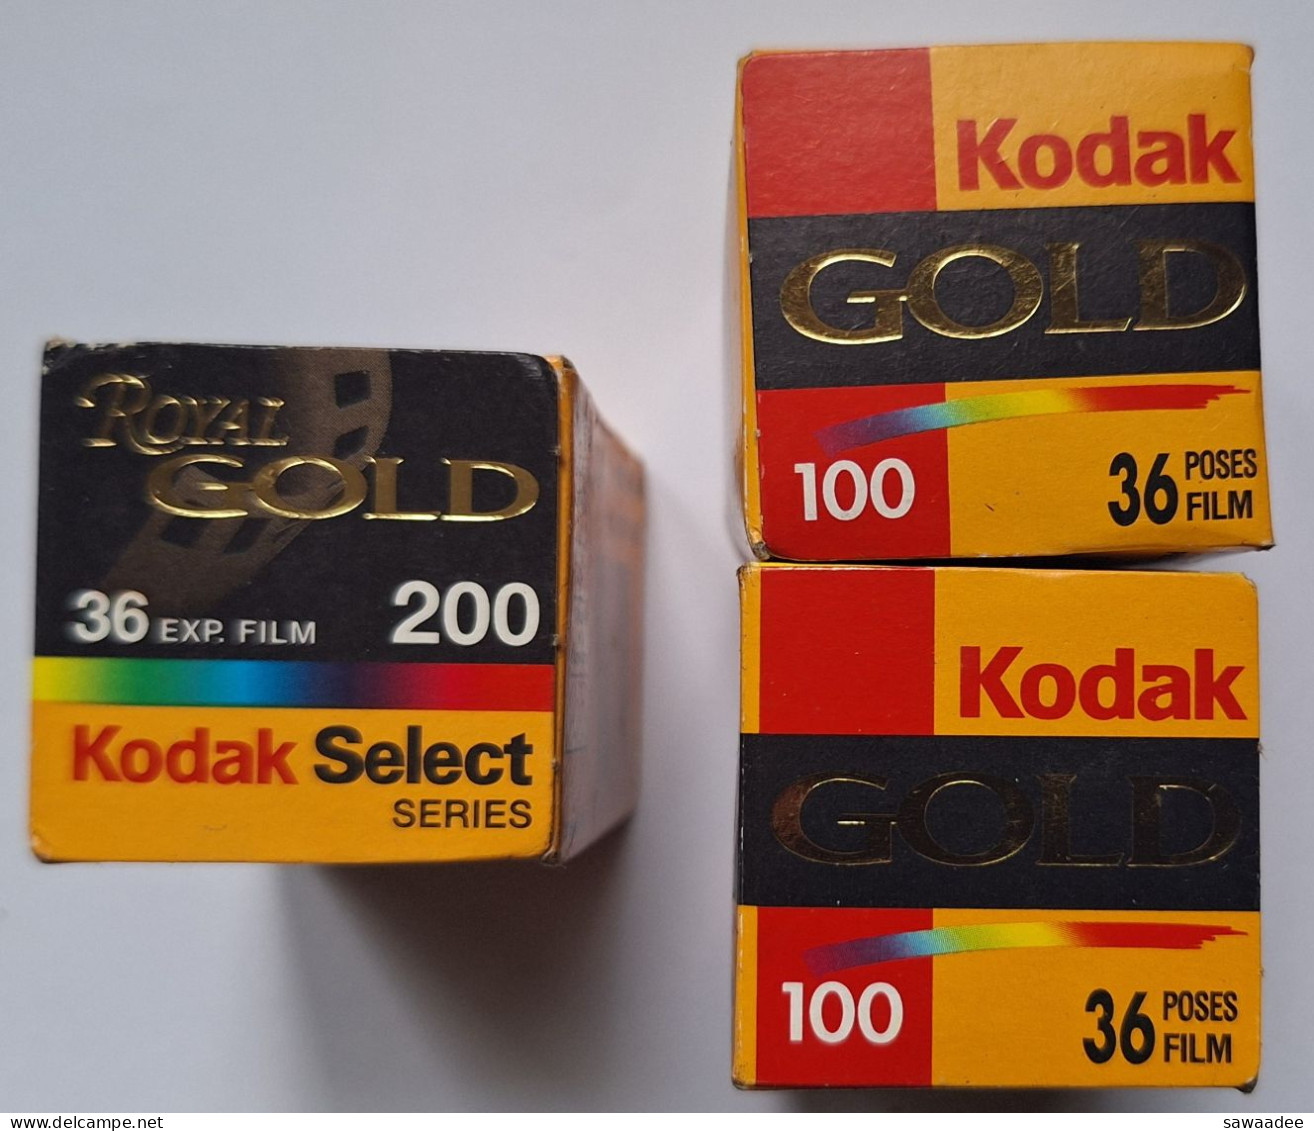 PHOTOGRAPHIE - LOT DE 3 BOITES DE PELLICULE KODAK - 1 ROYAL GOLD 200/36 - 2 GOLD 100/36 - ANNEE 2000 - VIERGES - Pellicole Cinematografiche: 35mm-16mm-9,5+8+S8mm